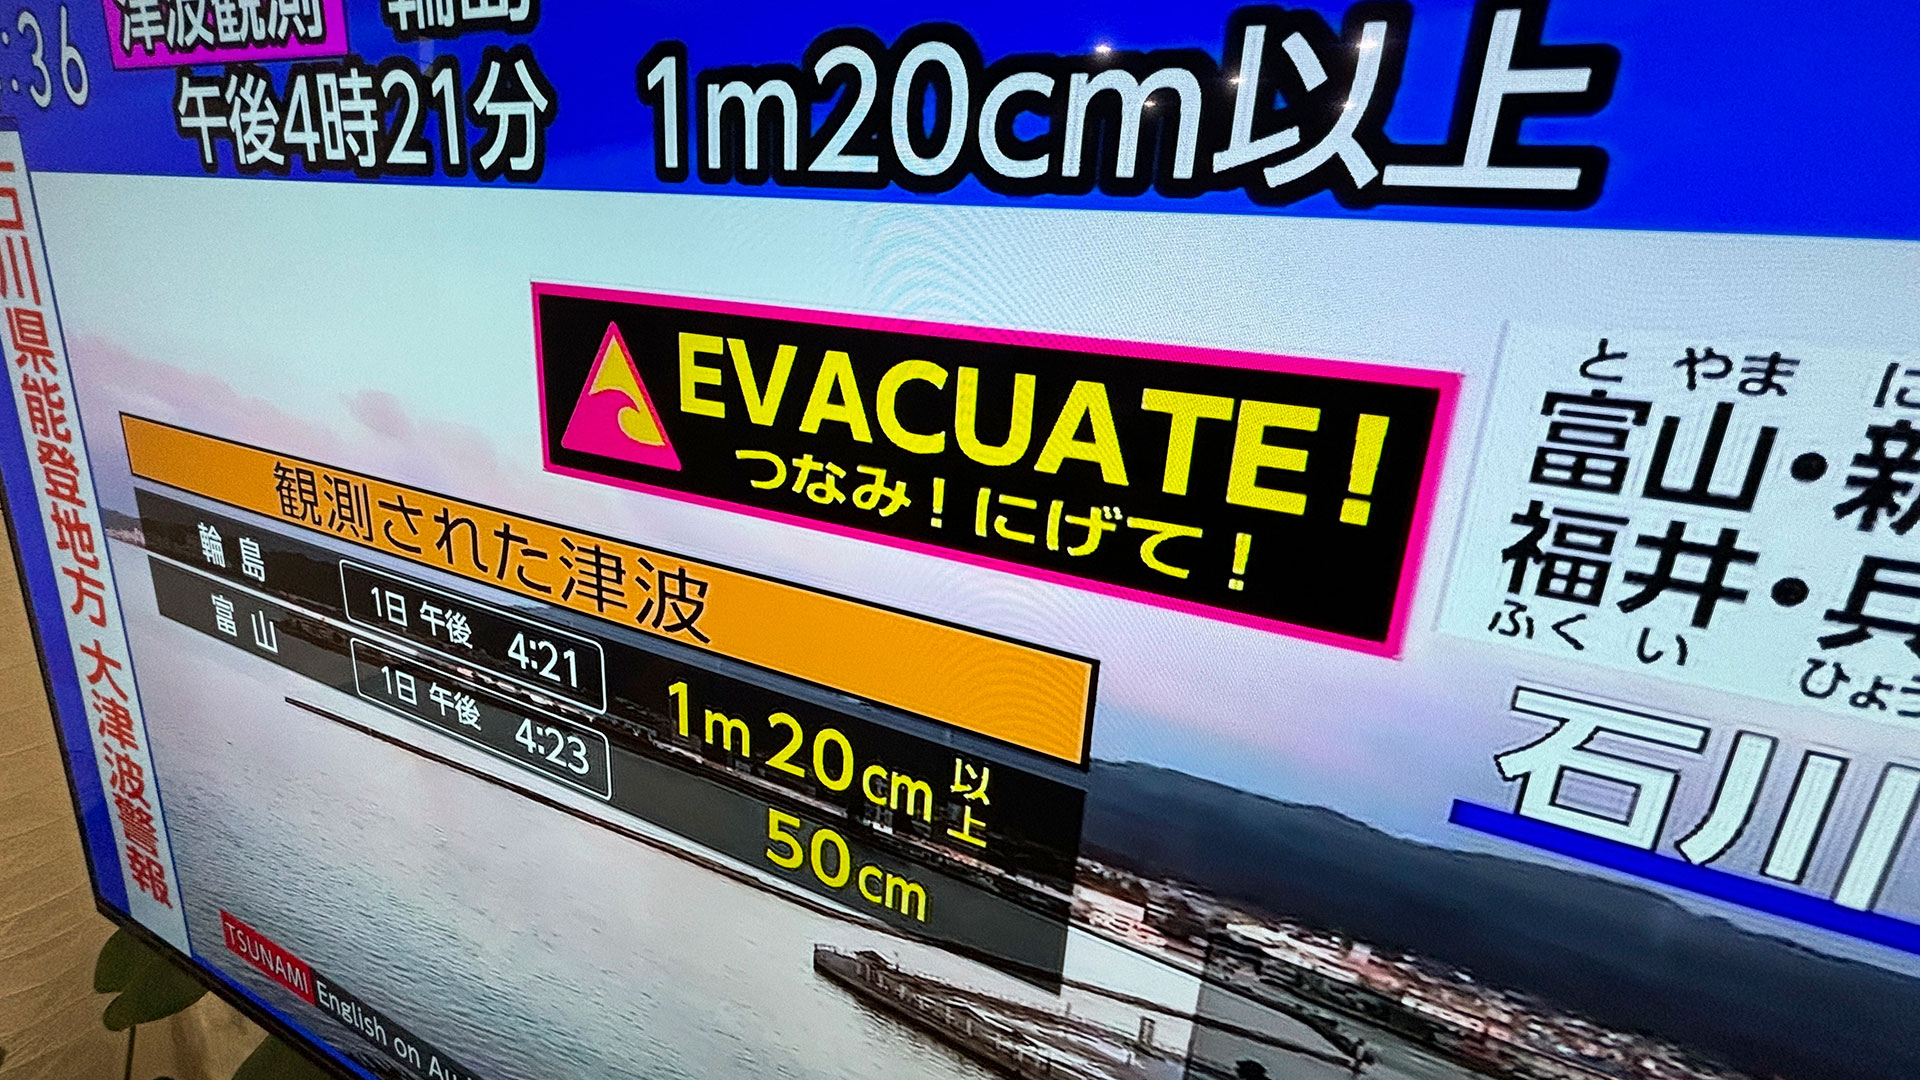 Ιαπωνία: Εικόνες μετά τον σεισμό 7,6 Ρίχτερ – Καταστροφές και εκκενώσεις περιοχών-1